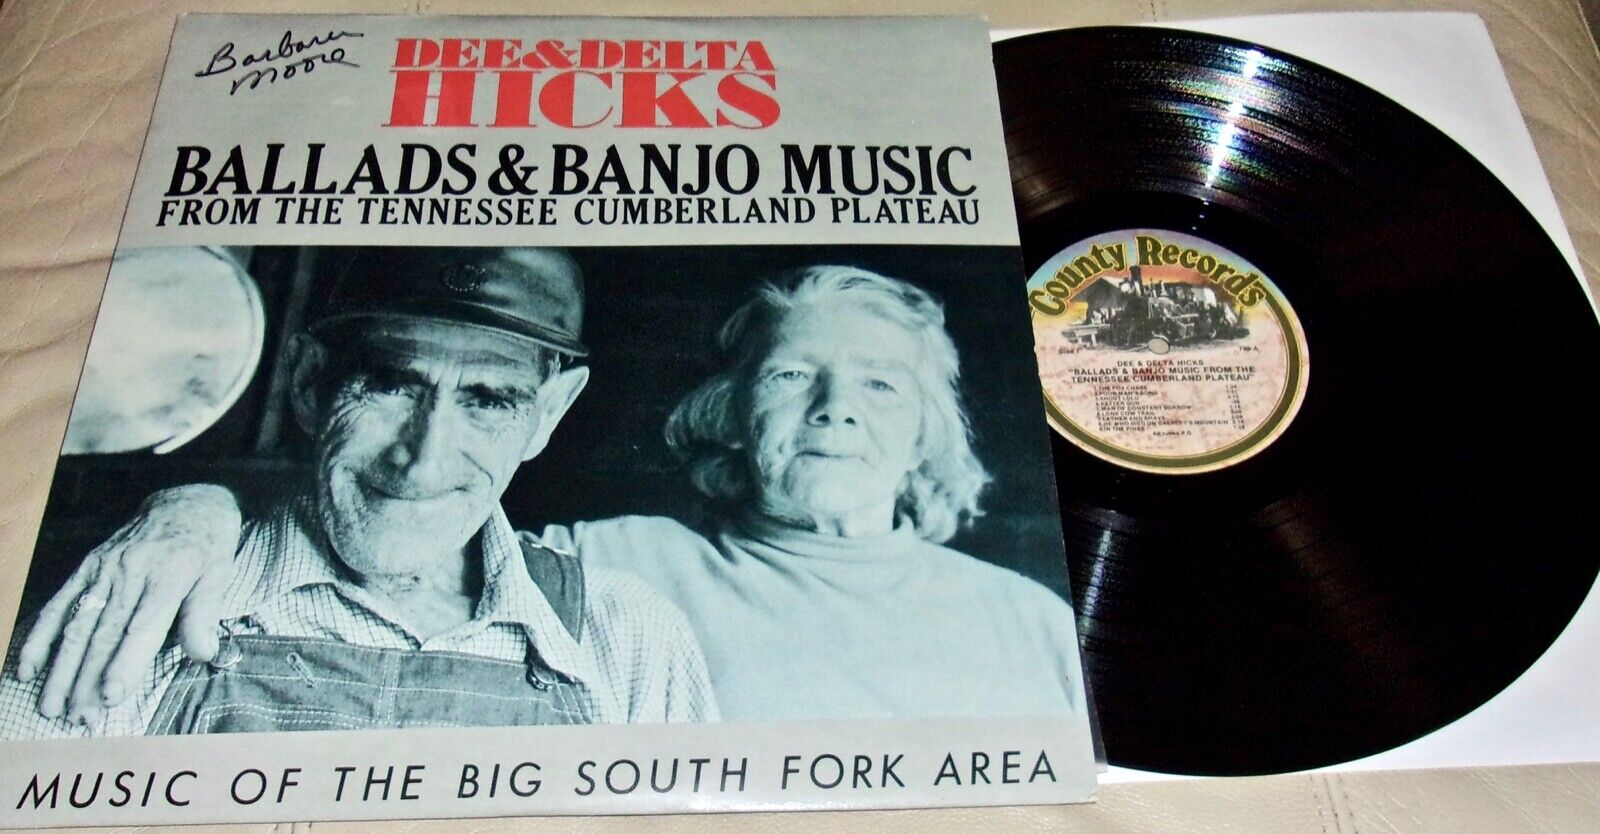 DEE & DELTA HICKS: Ballads & Banjo Music (Vinyl LP Record)